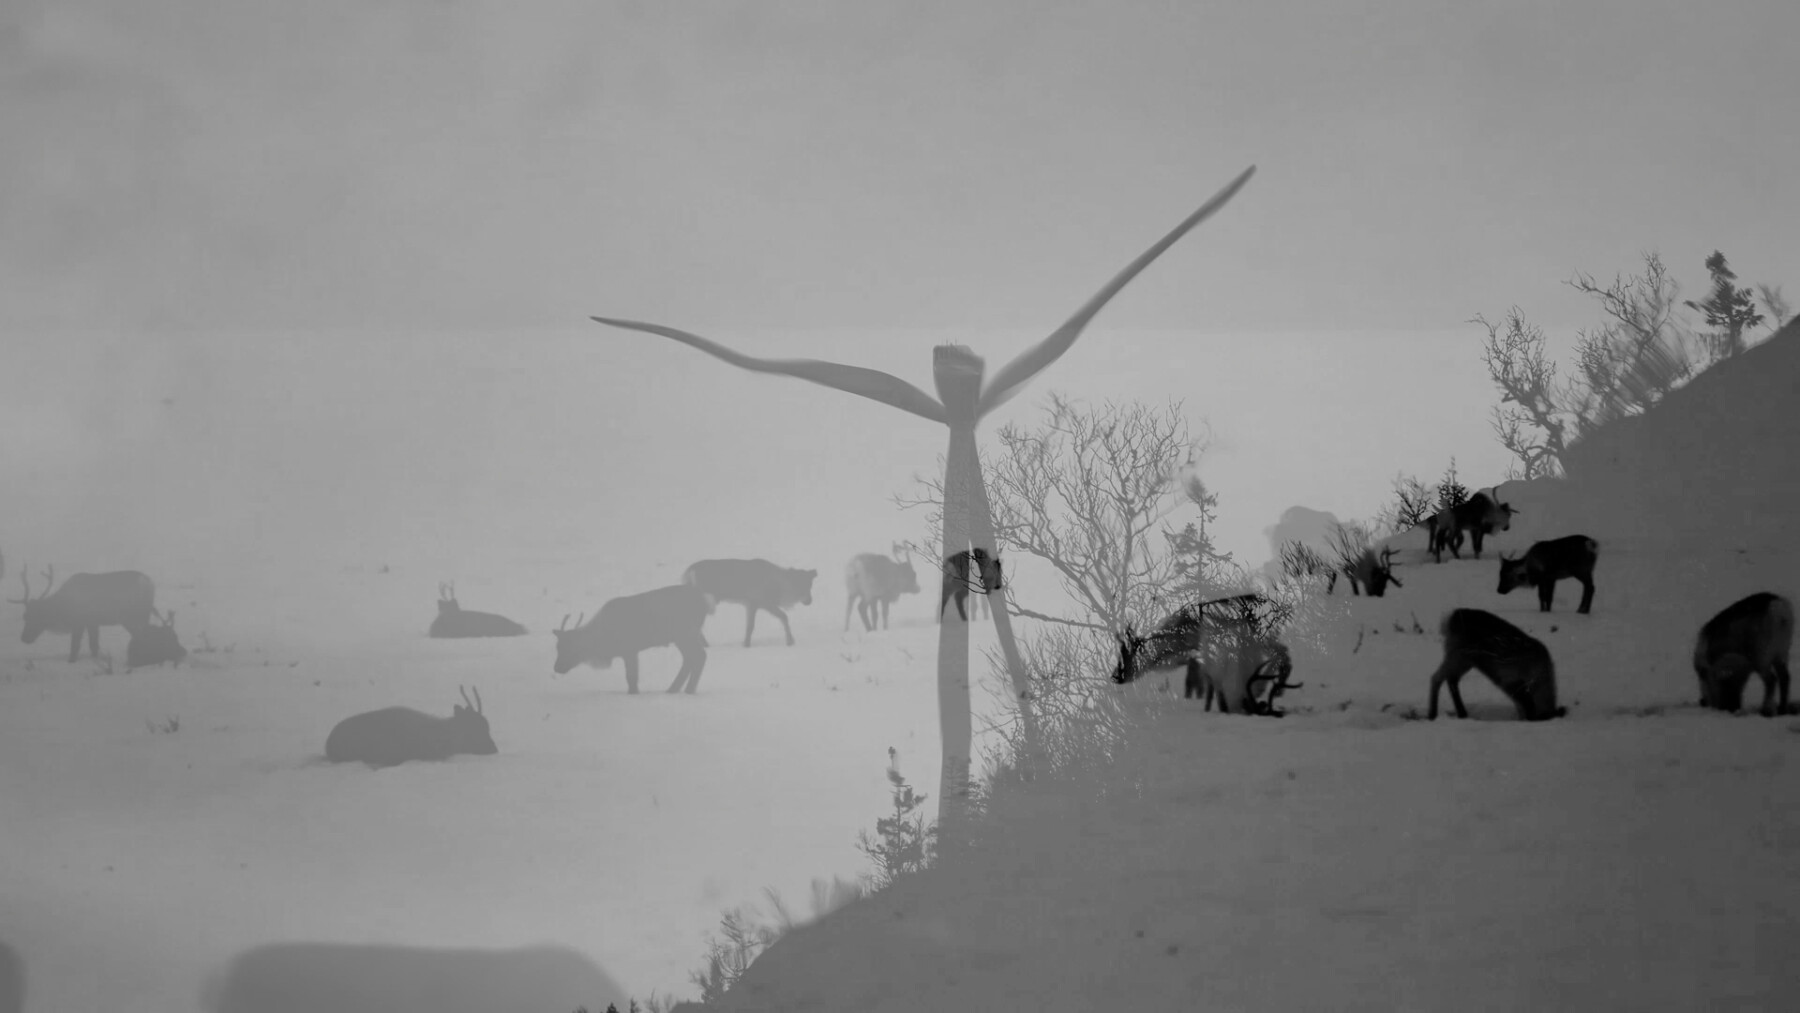 Два черно-белых изображения наложены друг на друга, на одном видны пасущиеся олени, на другом – ветряная турбина.